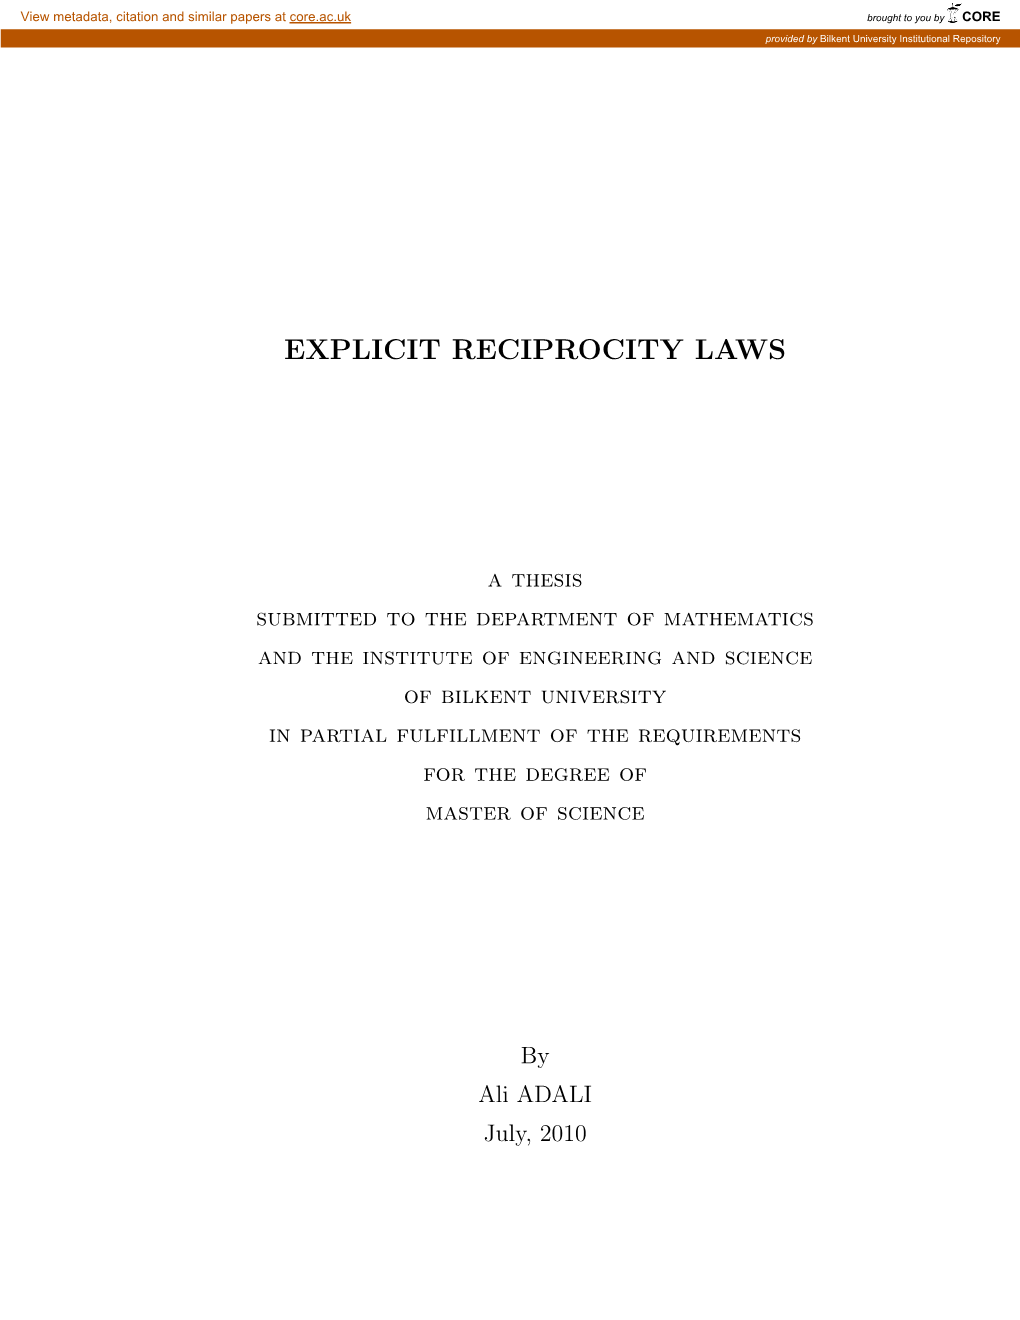 Explicit Reciprocity Laws